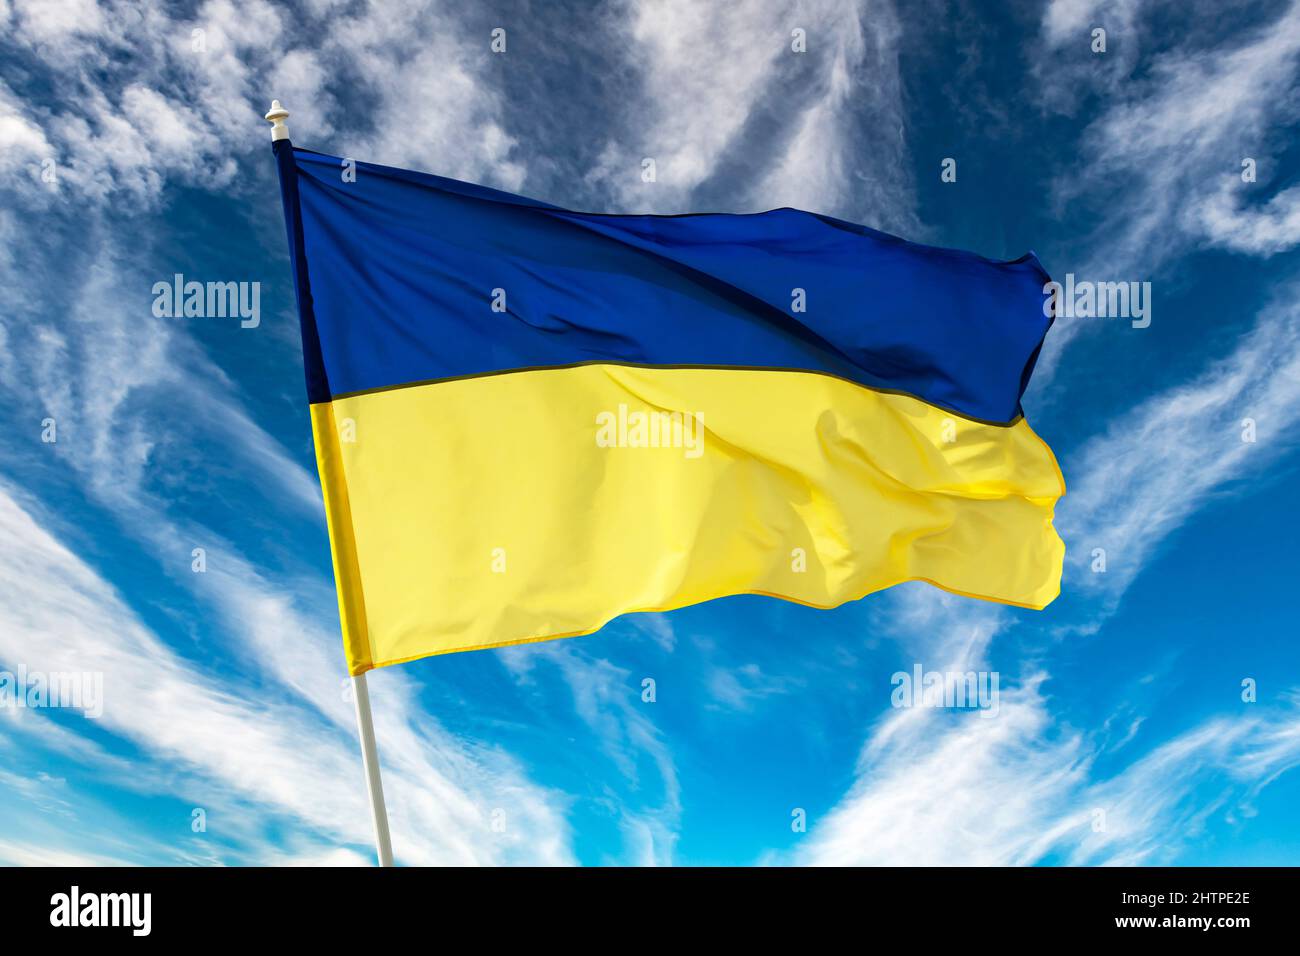 Ukrainische blaue und gelbe bicolor Nationalflagge auf blauem Himmel Hintergrund. Ukraine kämpft für Freiheit Konzept Stockfoto